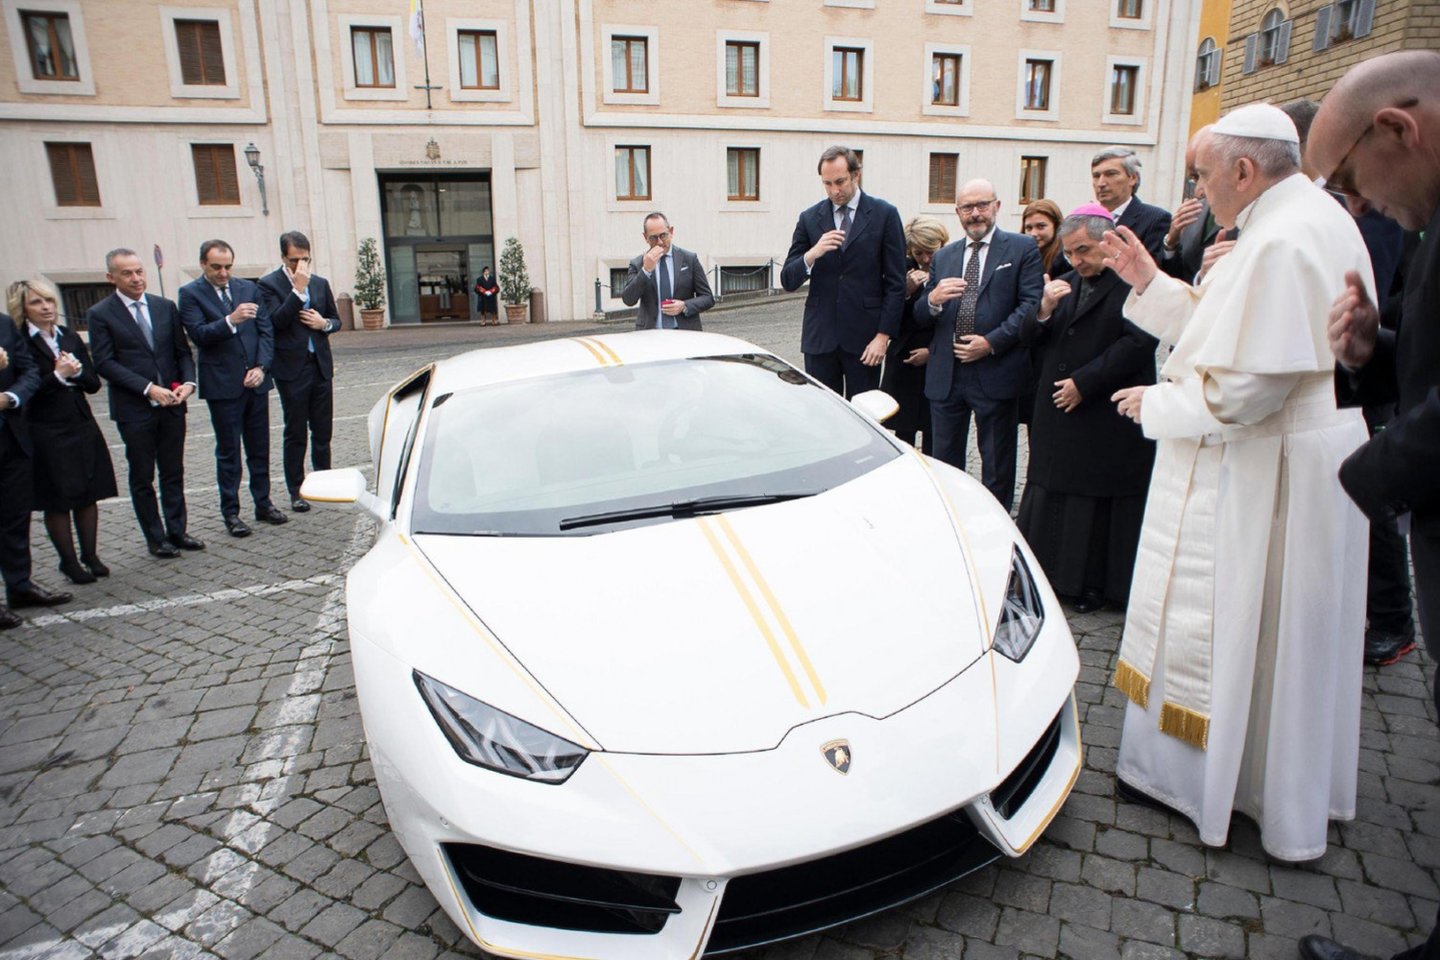 Popiežiaus „Lamborghini“ aukcione parduotas už beveik 900 000 eurų. <br>EPA-ELTA nuotr.